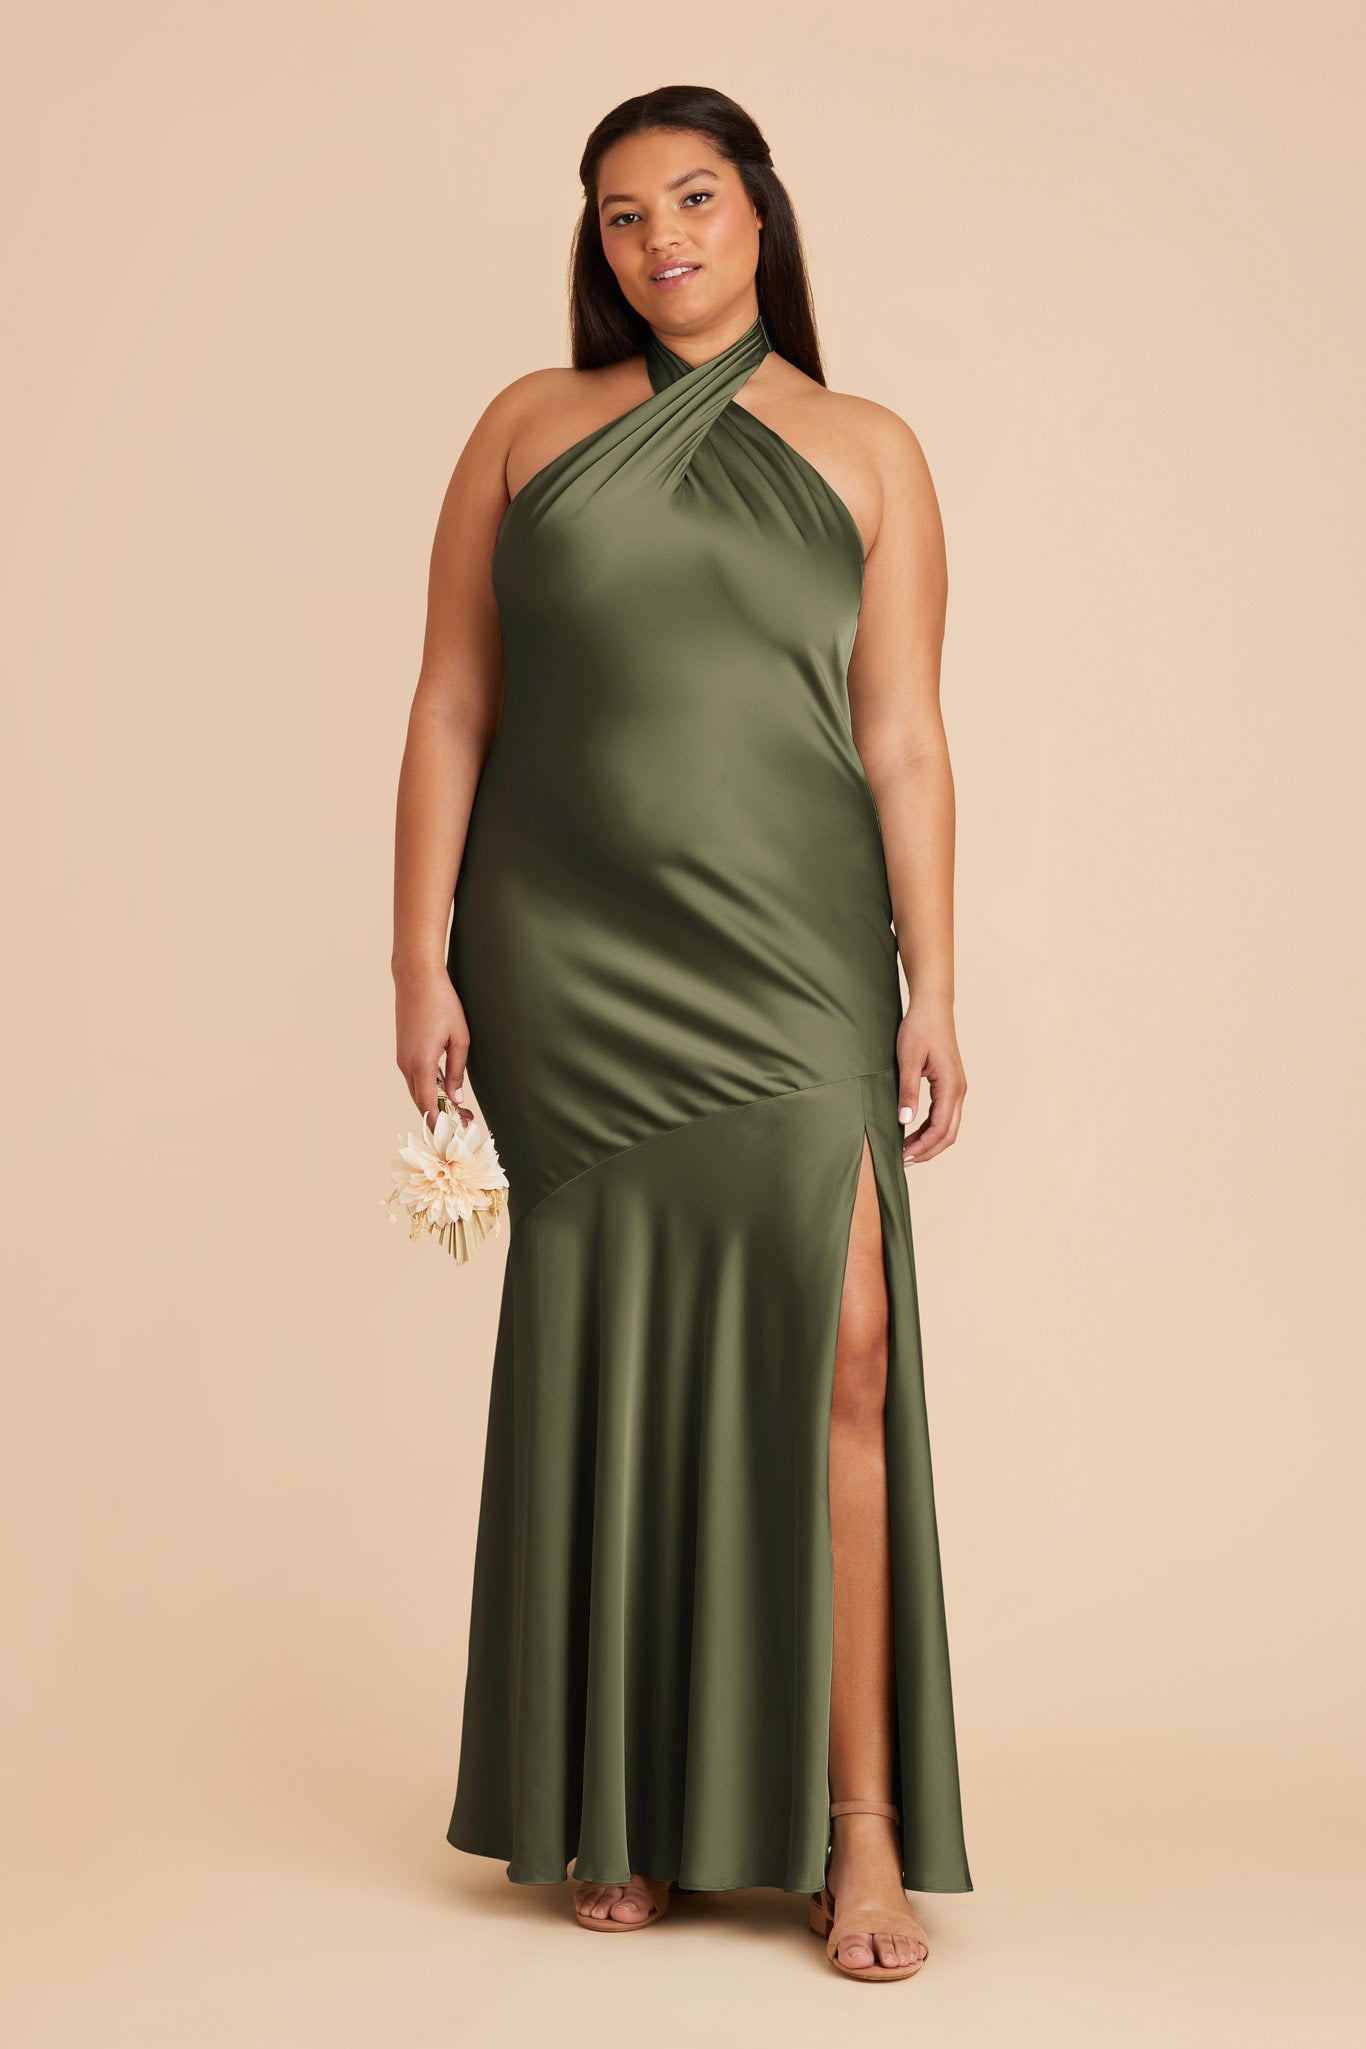 Olive Stephanie Matte Satin Dress by Birdy Grey